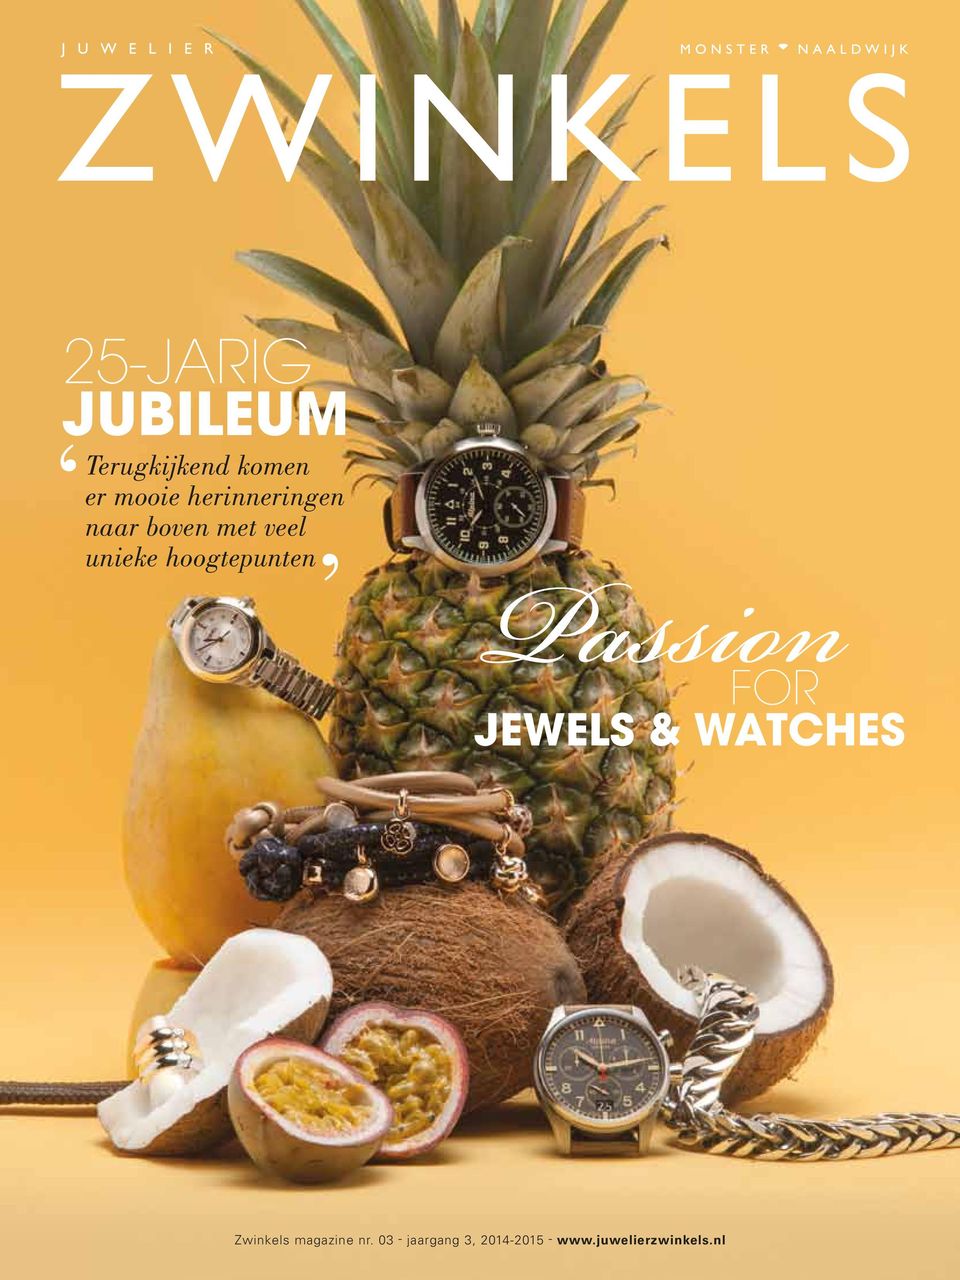 hoogtepunten Passion For jewels & watches Zwinkels